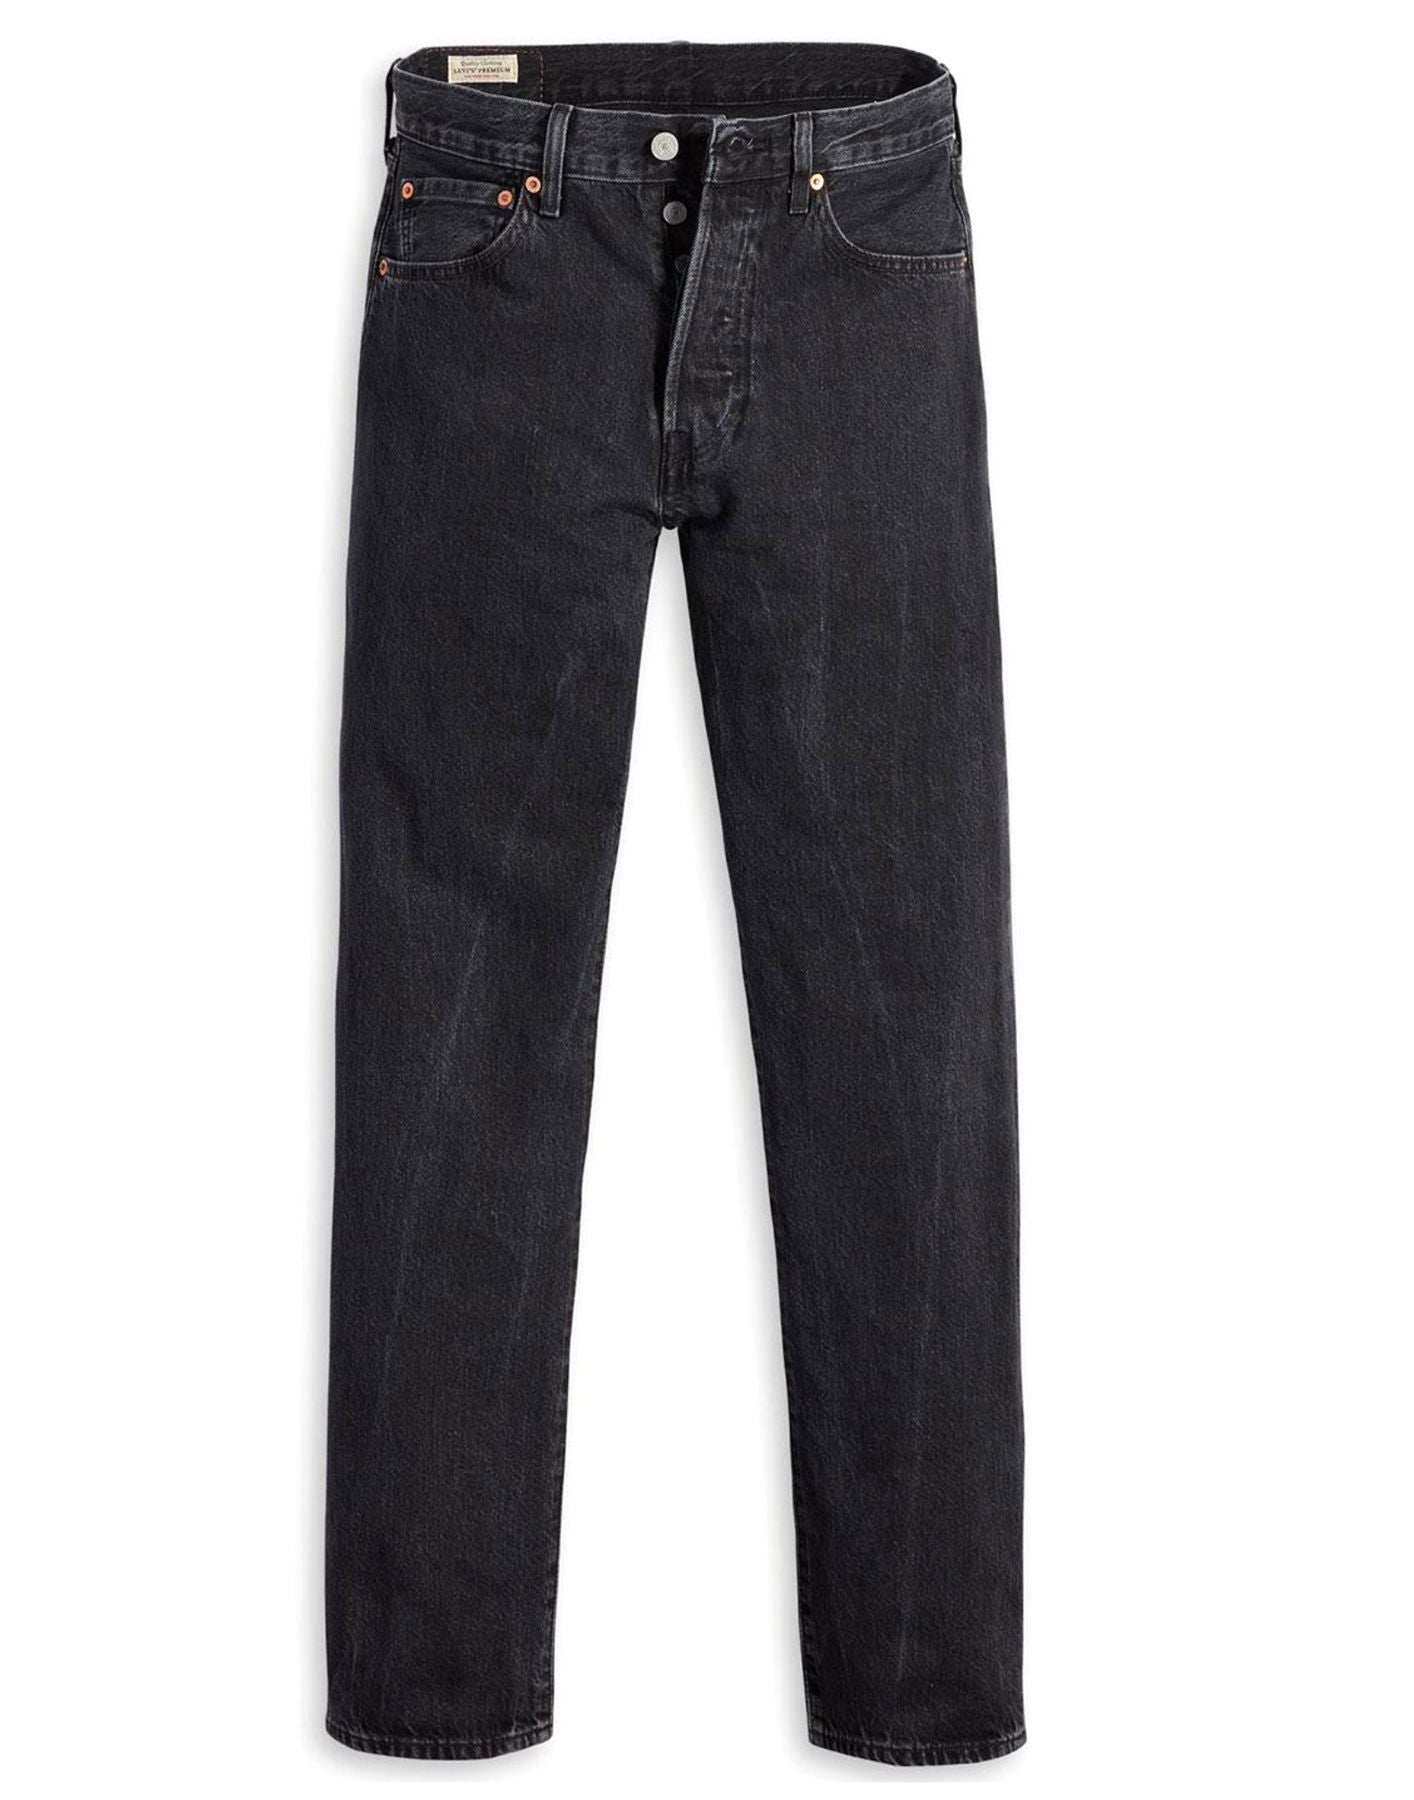 Jeans für Mann 005013371 Levi's